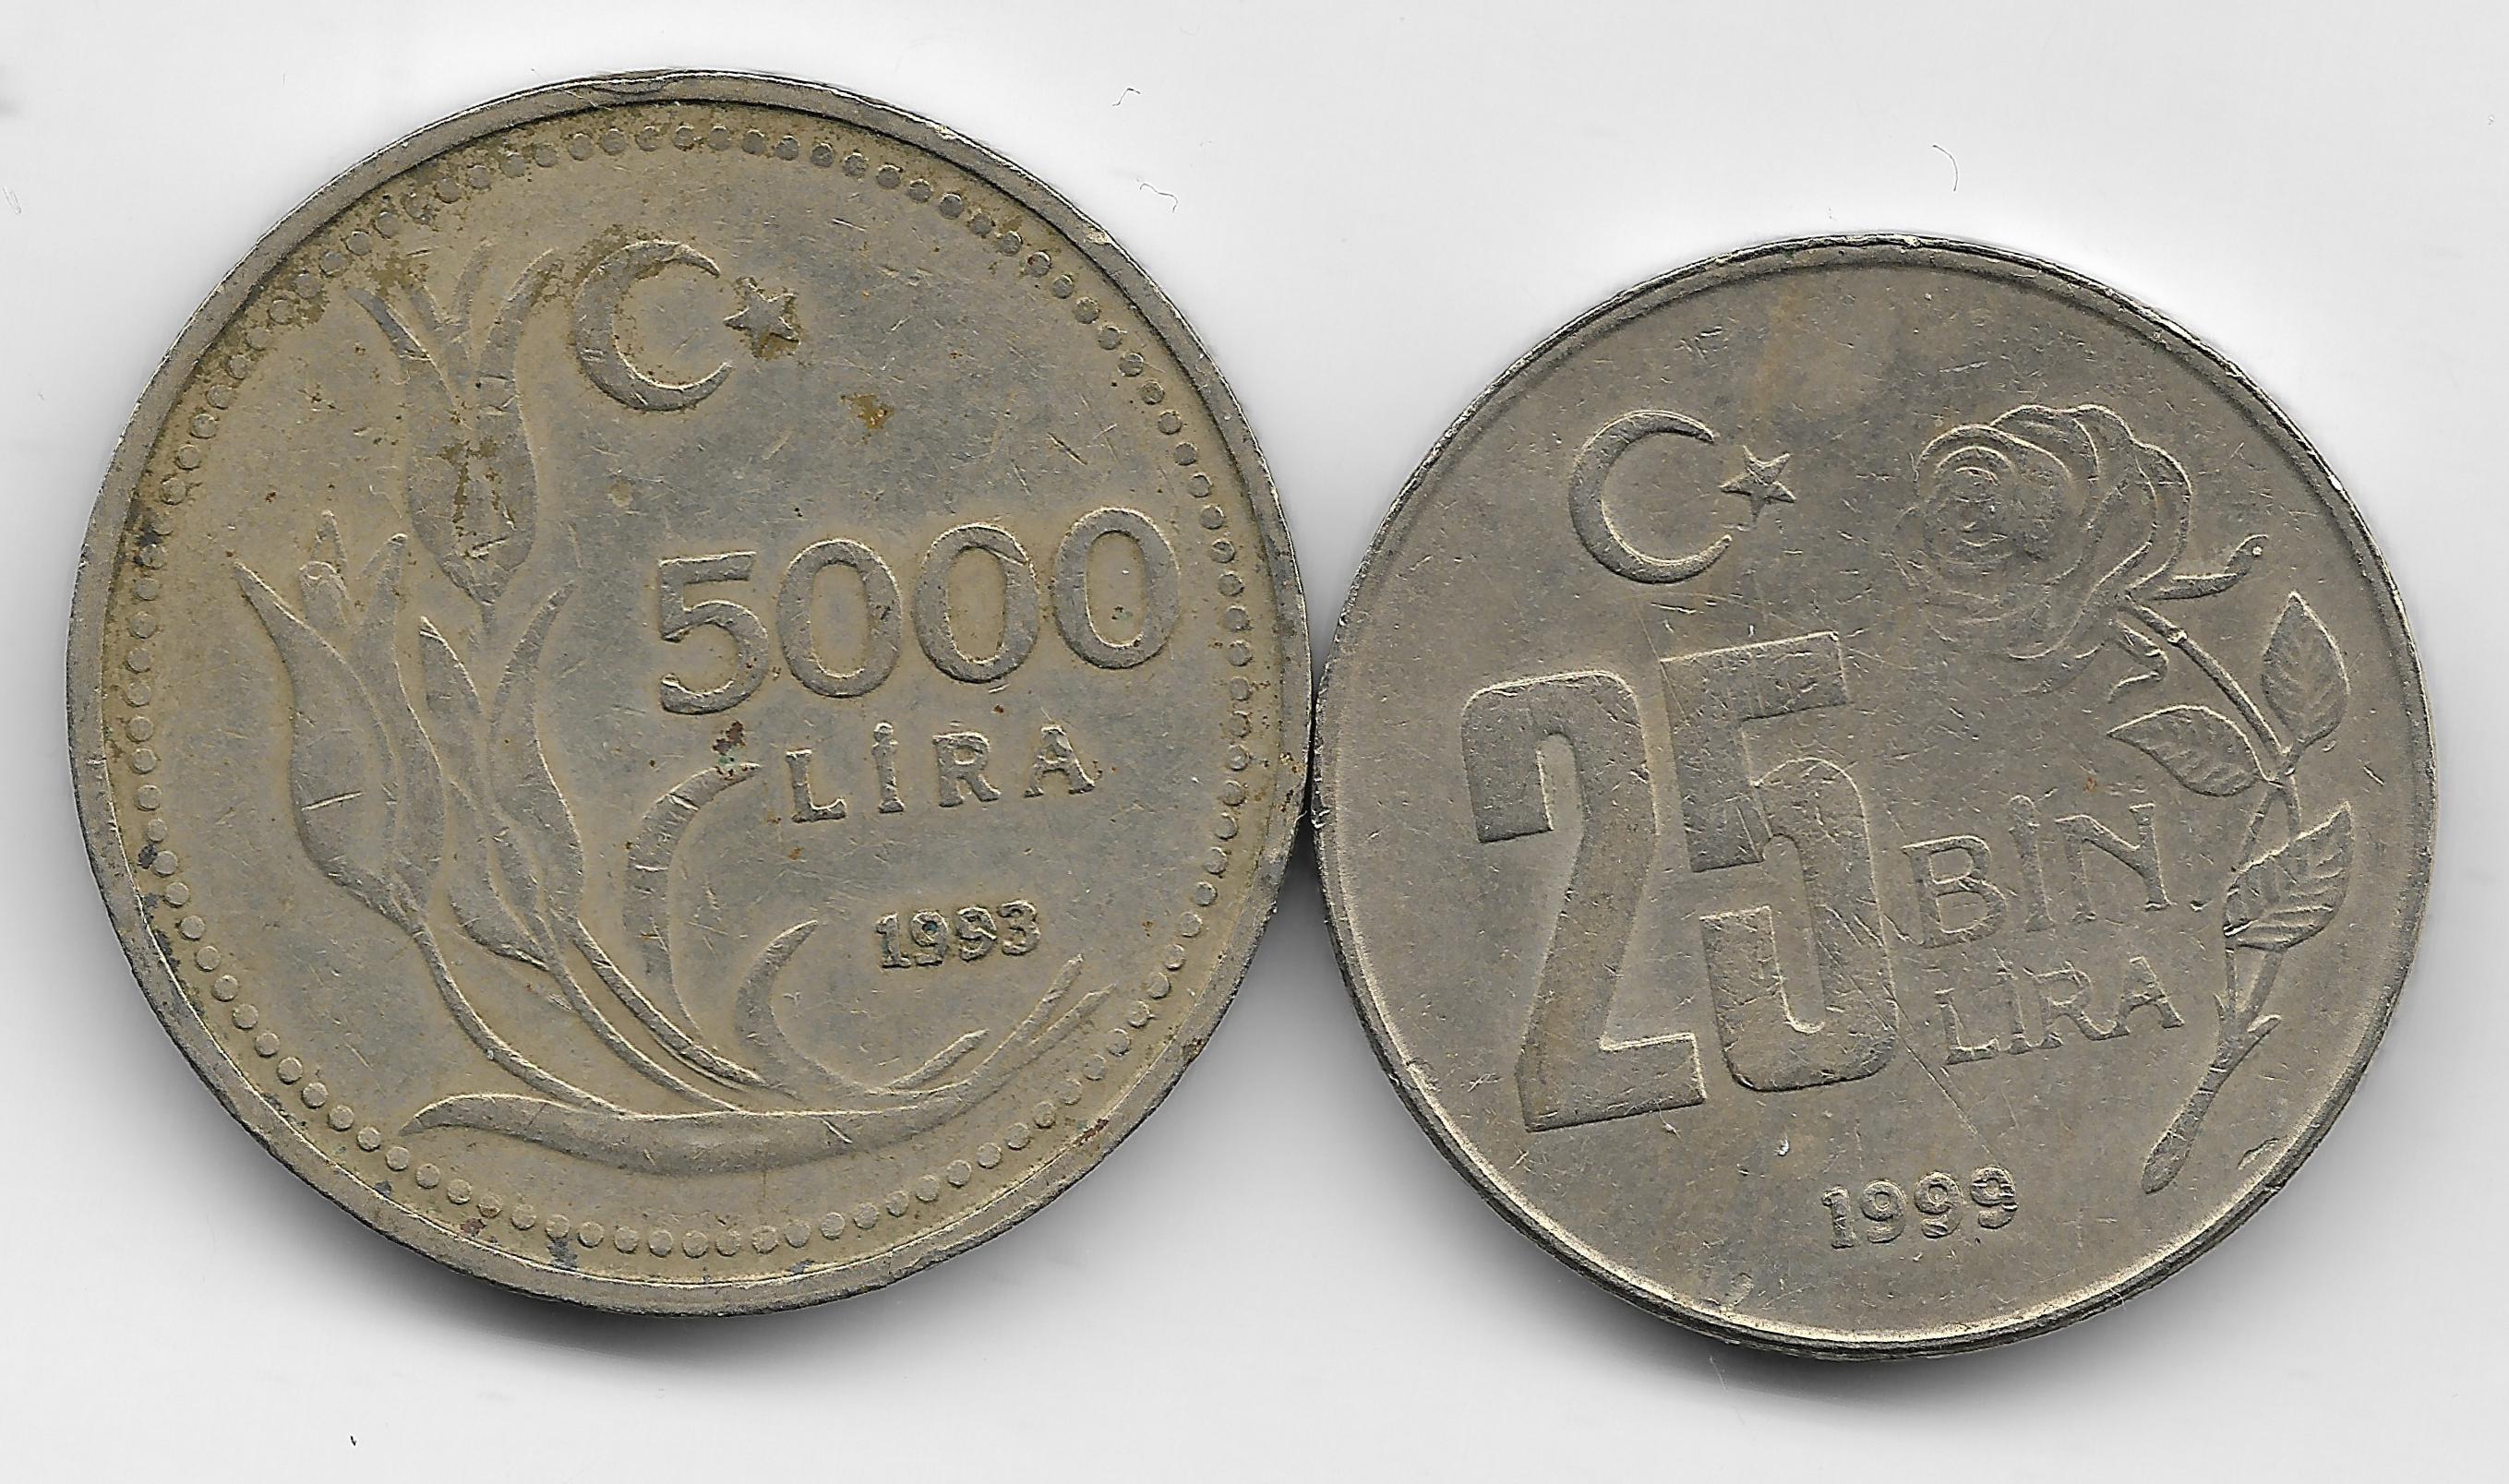 1700 лир